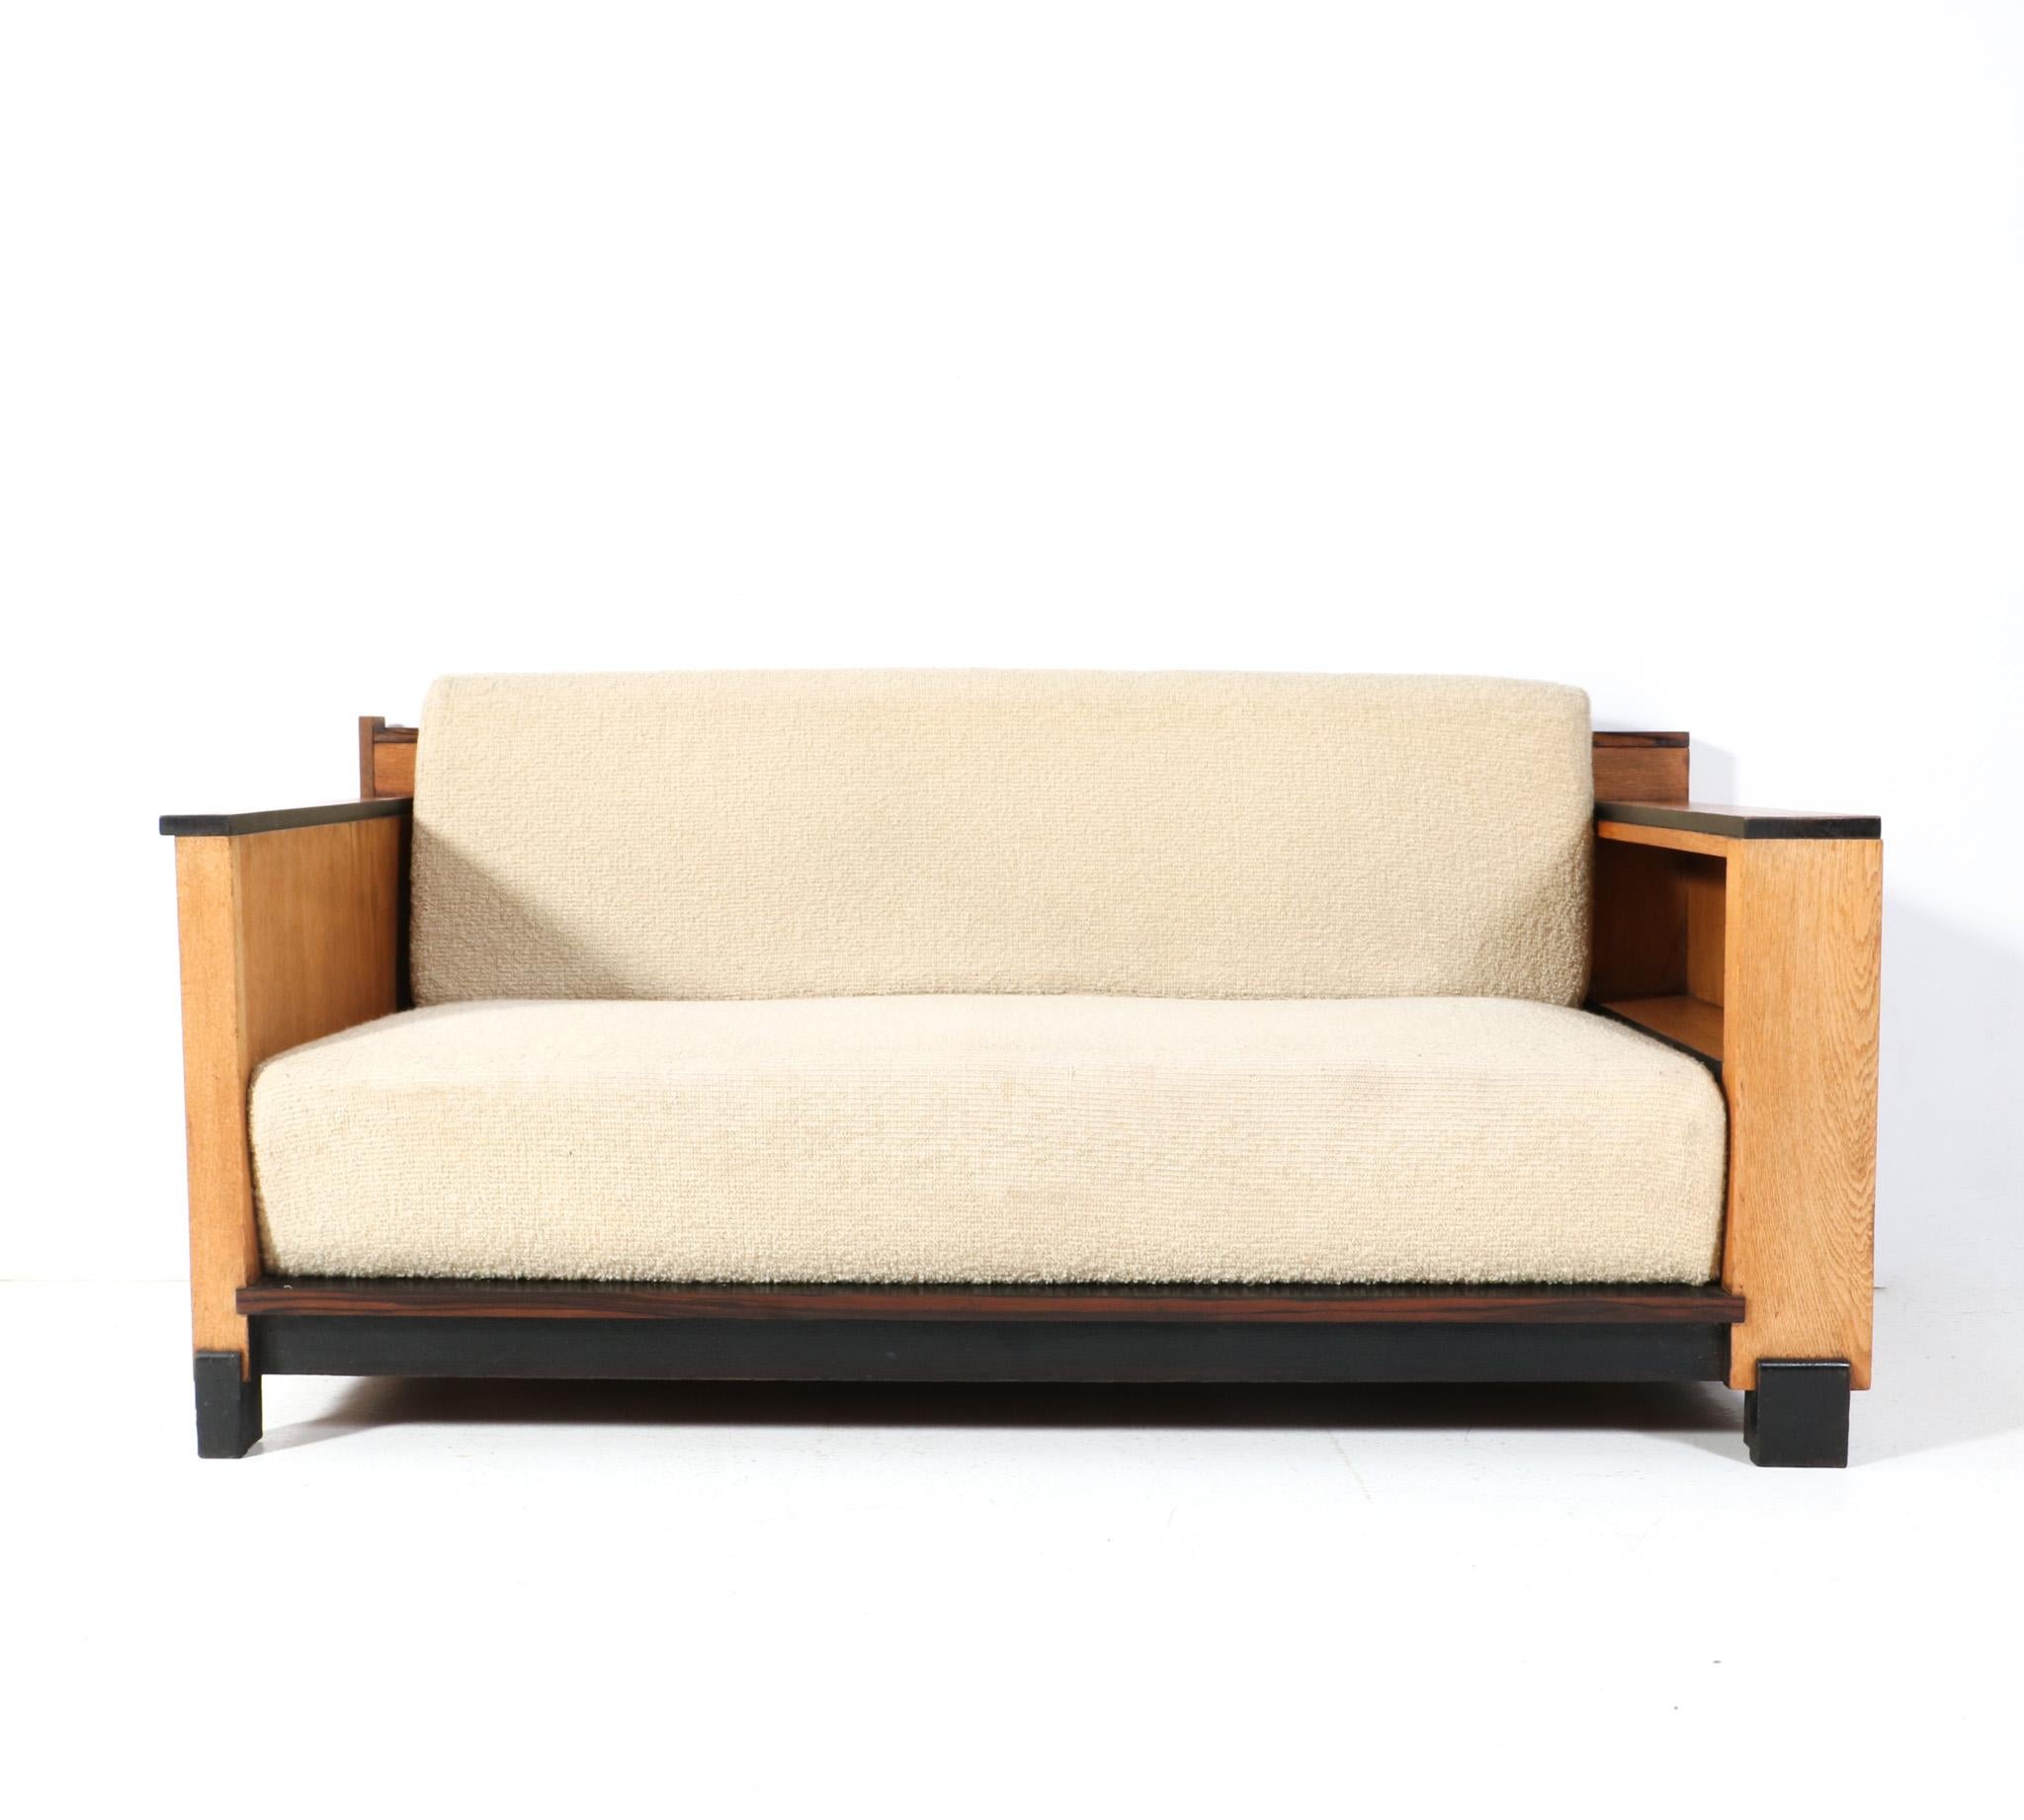 Atemberaubende und seltene Art Deco Modernist Bank oder Sofa.
Auffälliges niederländisches Design aus den 1920er Jahren.
Massiver Eichenholzrahmen und eichenfurnierter Rahmen mit neu gepolsterten Sitz- und Rückenkissen, die der frühere Besitzer vor